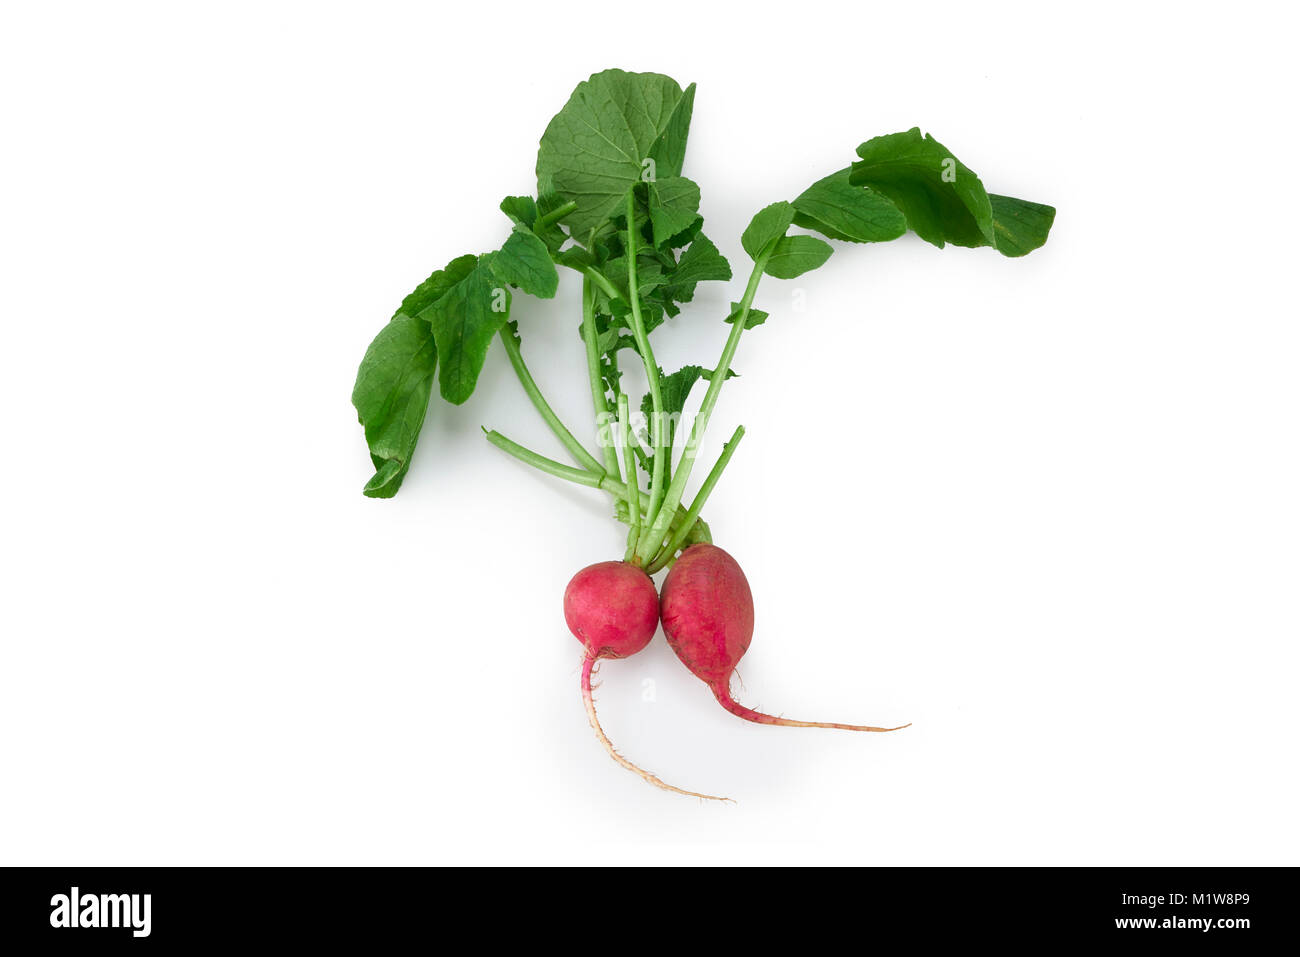 Un organico fresco ripe rosso vegetale di rafano isolato in uno sfondo bianco Foto Stock